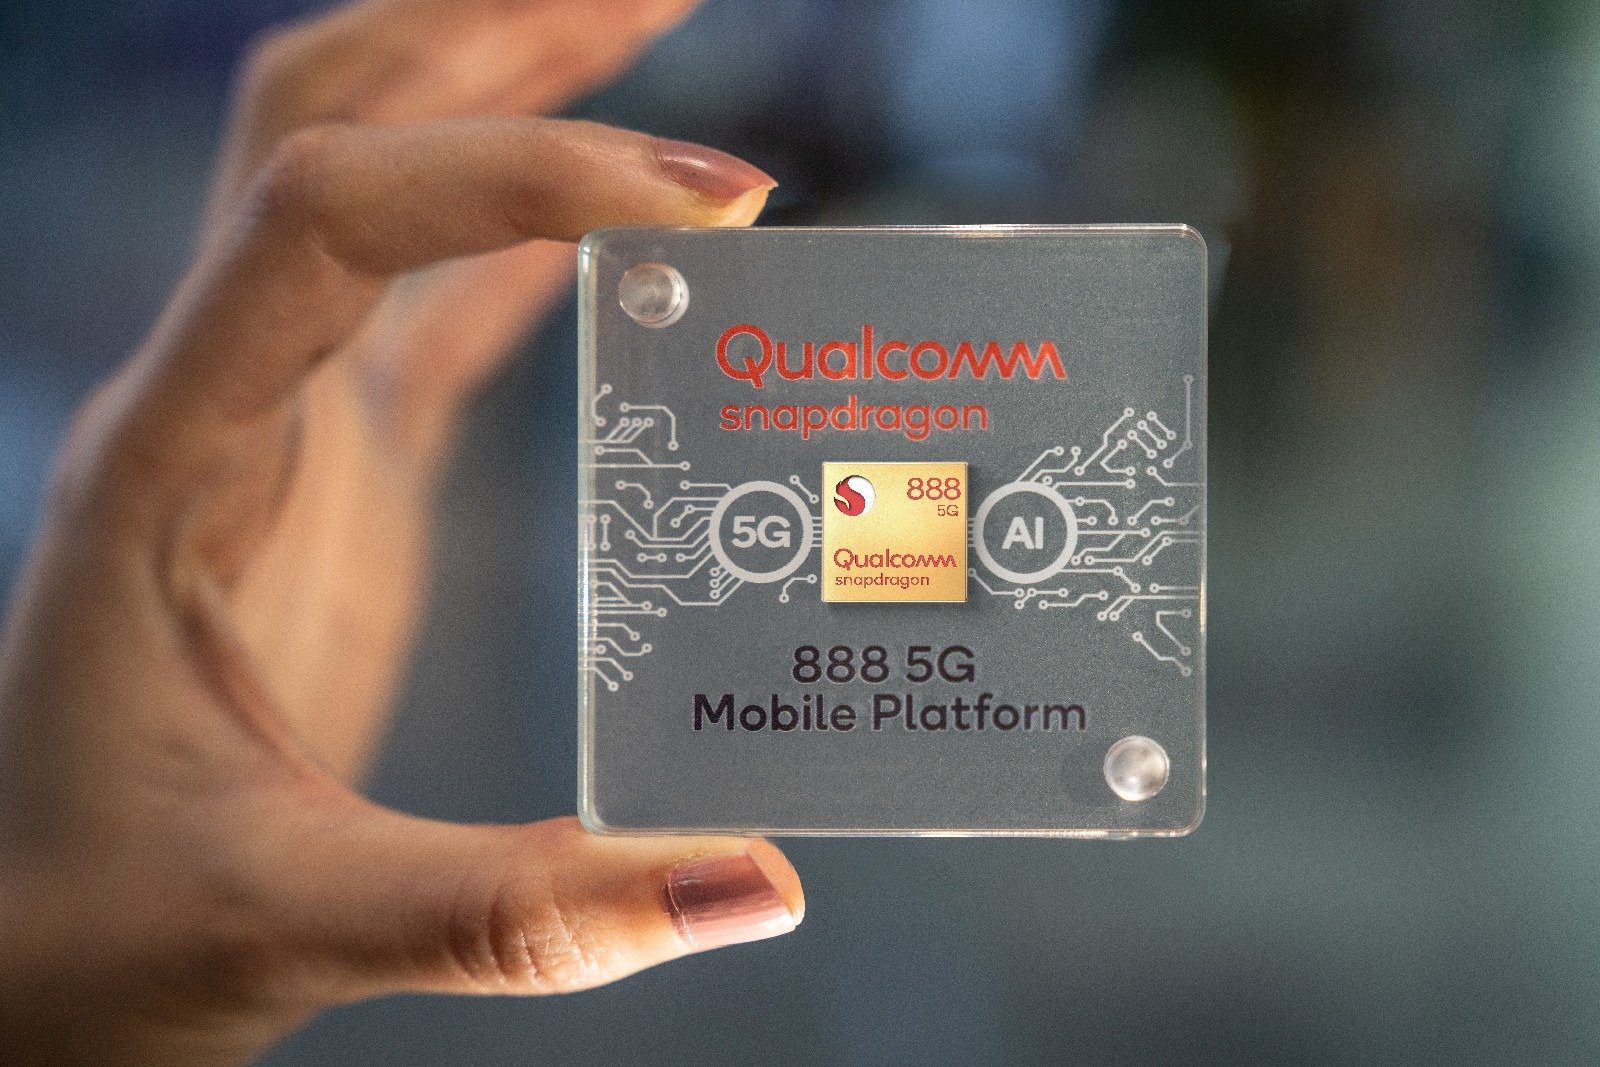 Das ist die Leistung des Qualcomm Snapdragon 888 Mobilprozessors - es gibt Power! 15